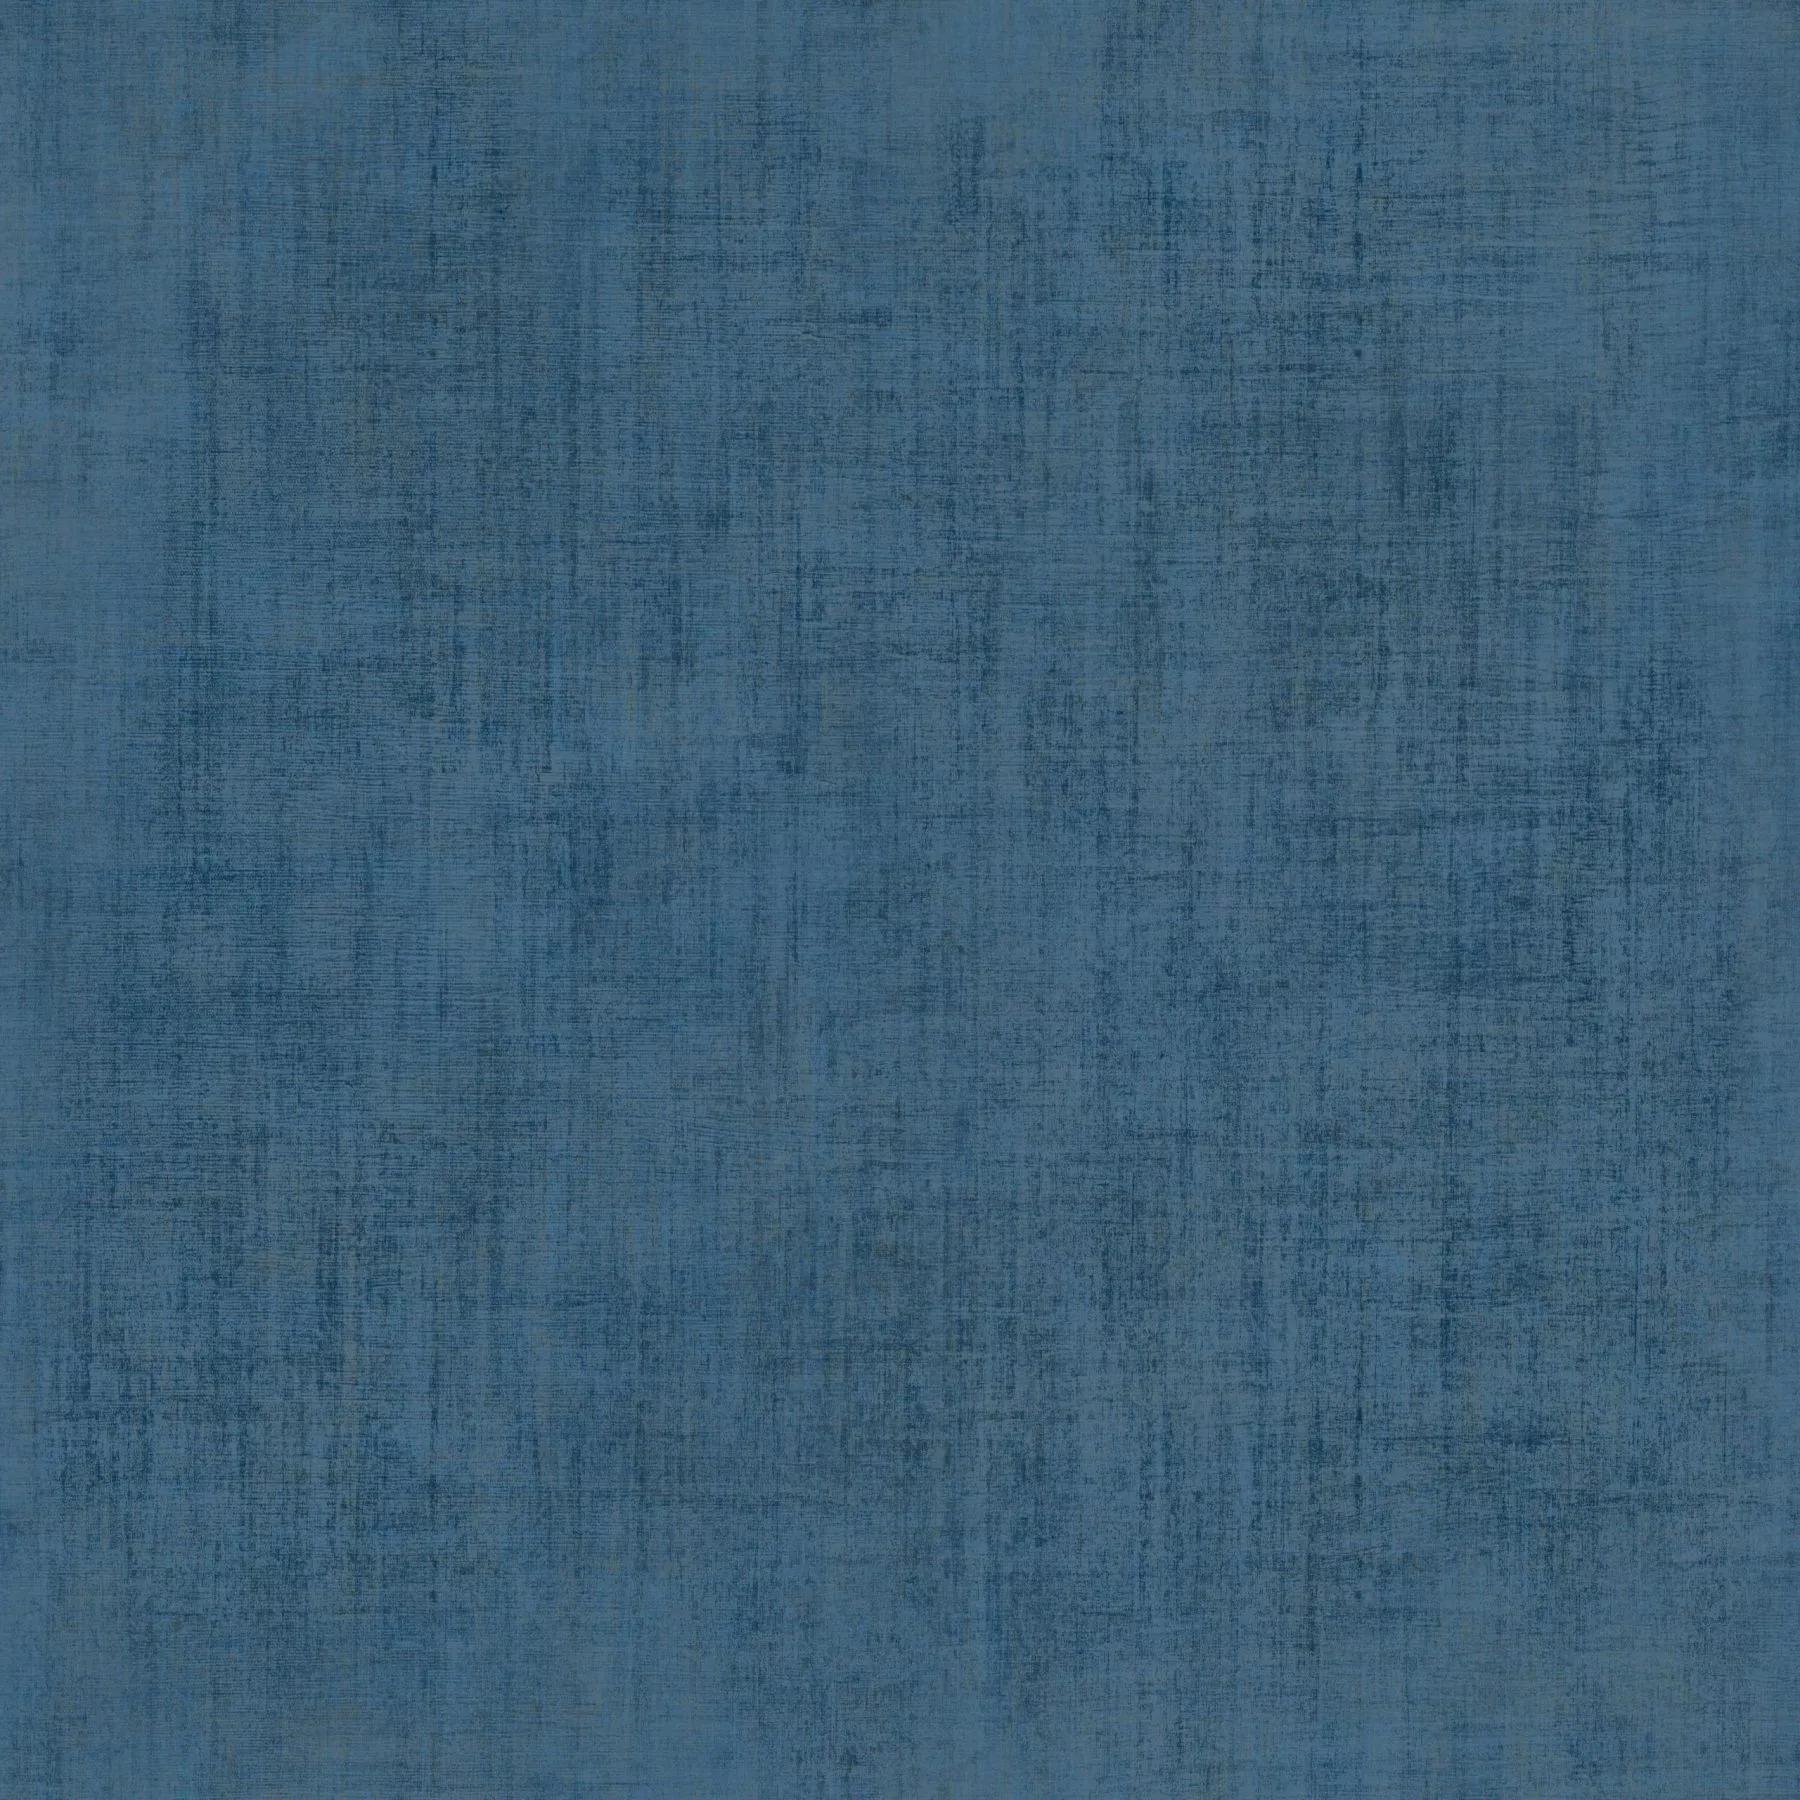 Kék textil hatású modern vlies dekor tapéta